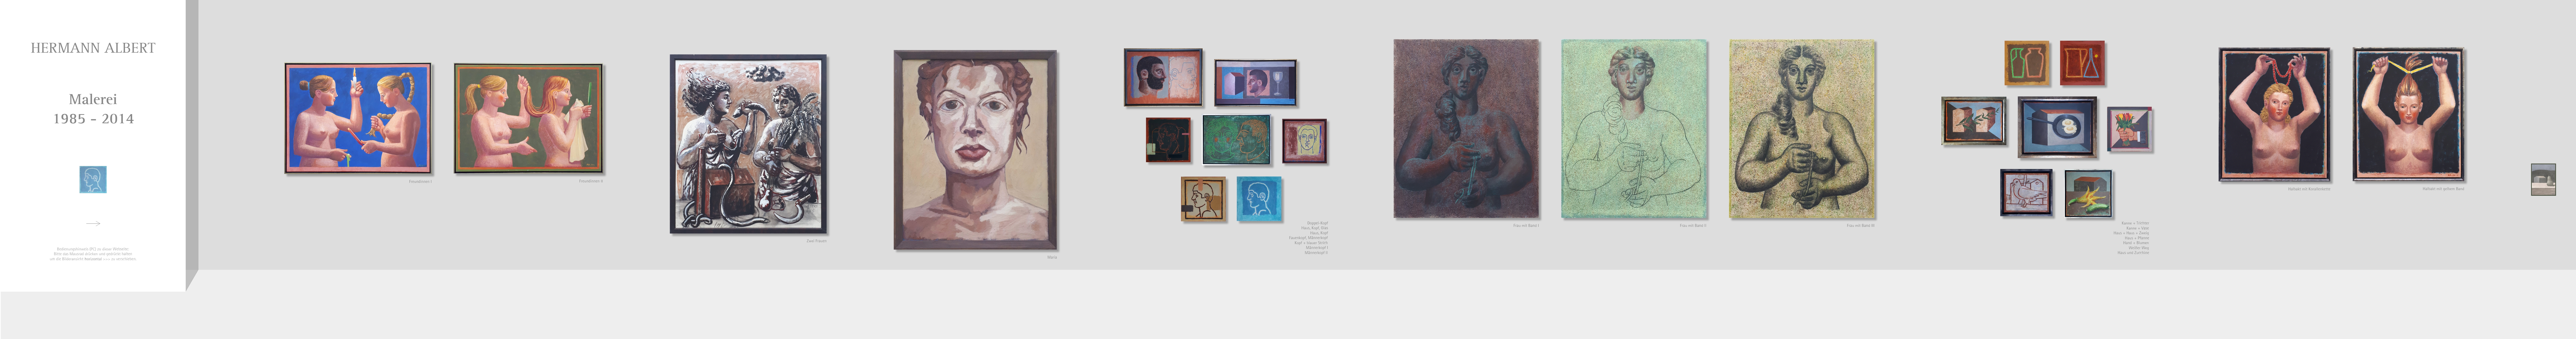 Ausstellungswand mit vielen Gemälden